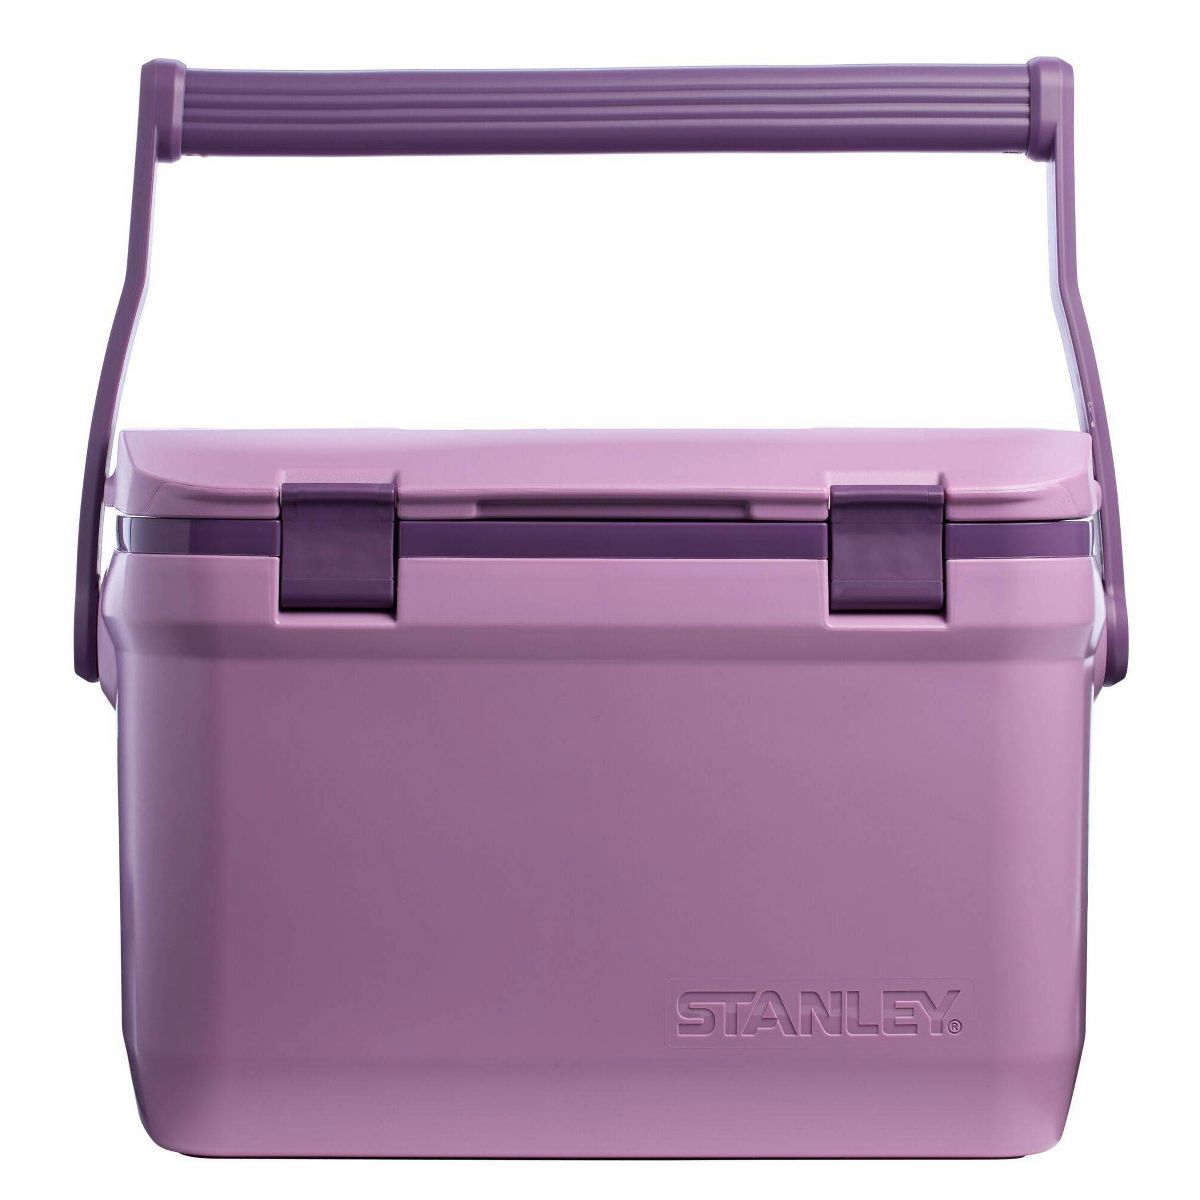 Stanley 16qt Easy-Carry Outdoor Cooler - Azure | Target